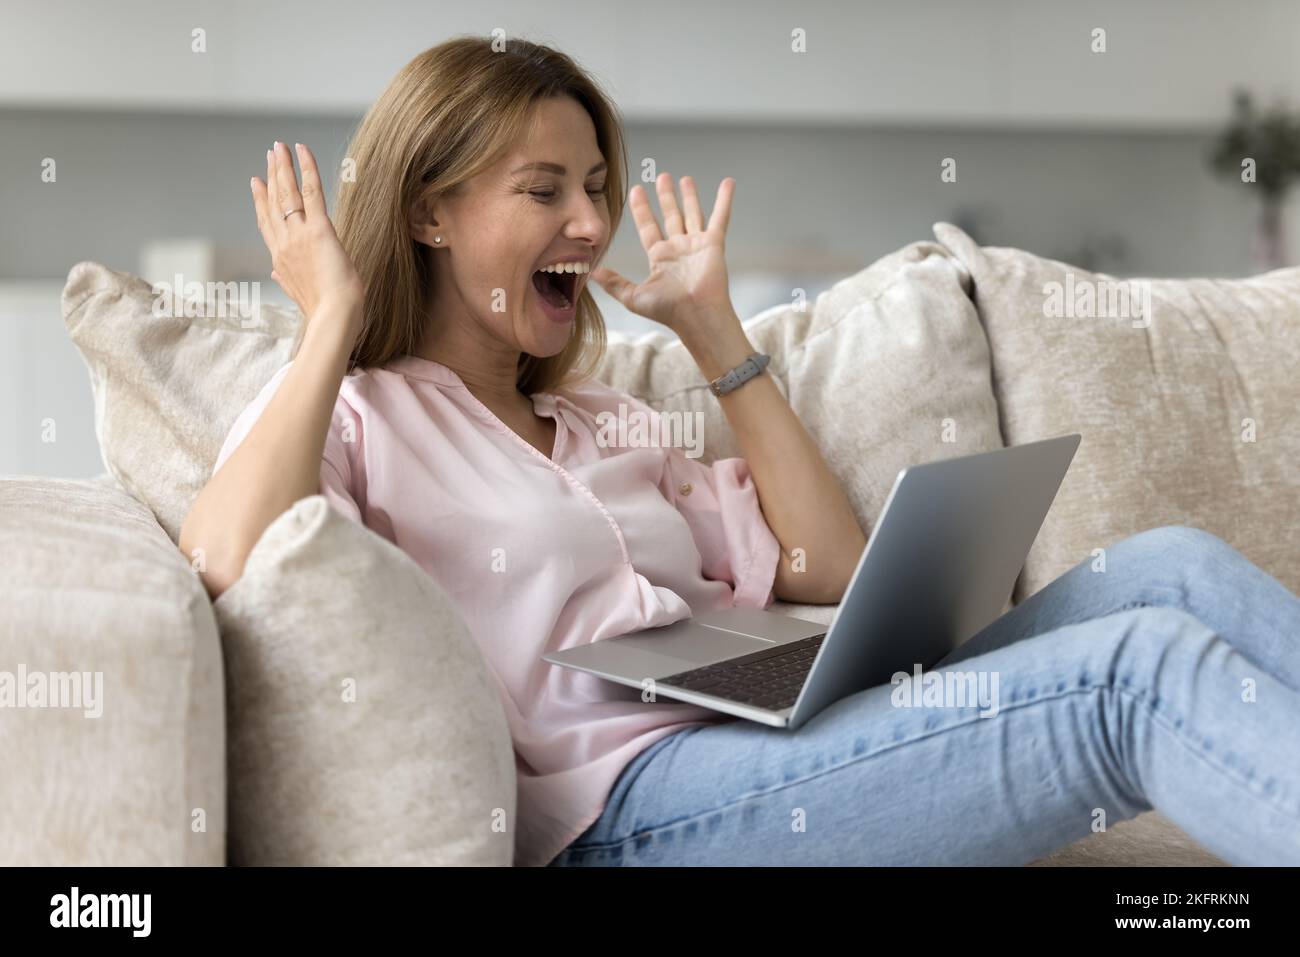 Une femme regardant un ordinateur portable se sent vraiment joyeuse, profitez d'une offre commerciale exceptionnelle Banque D'Images